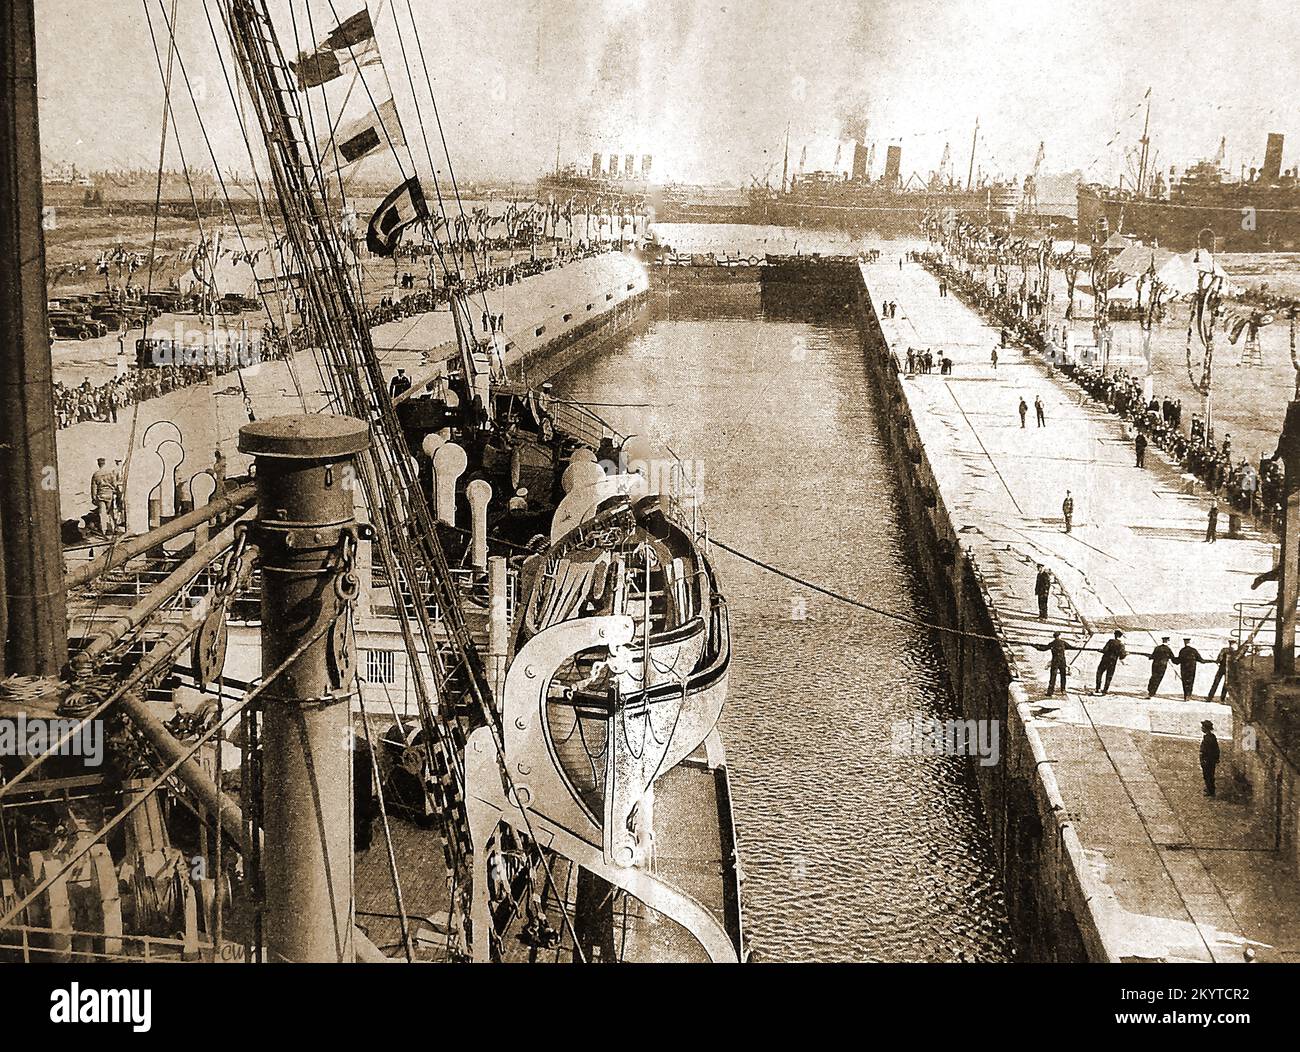 Un'immagine degli anni '40 di una nave che entra nel bacino di Tilbury Docks, Regno Unito Foto Stock